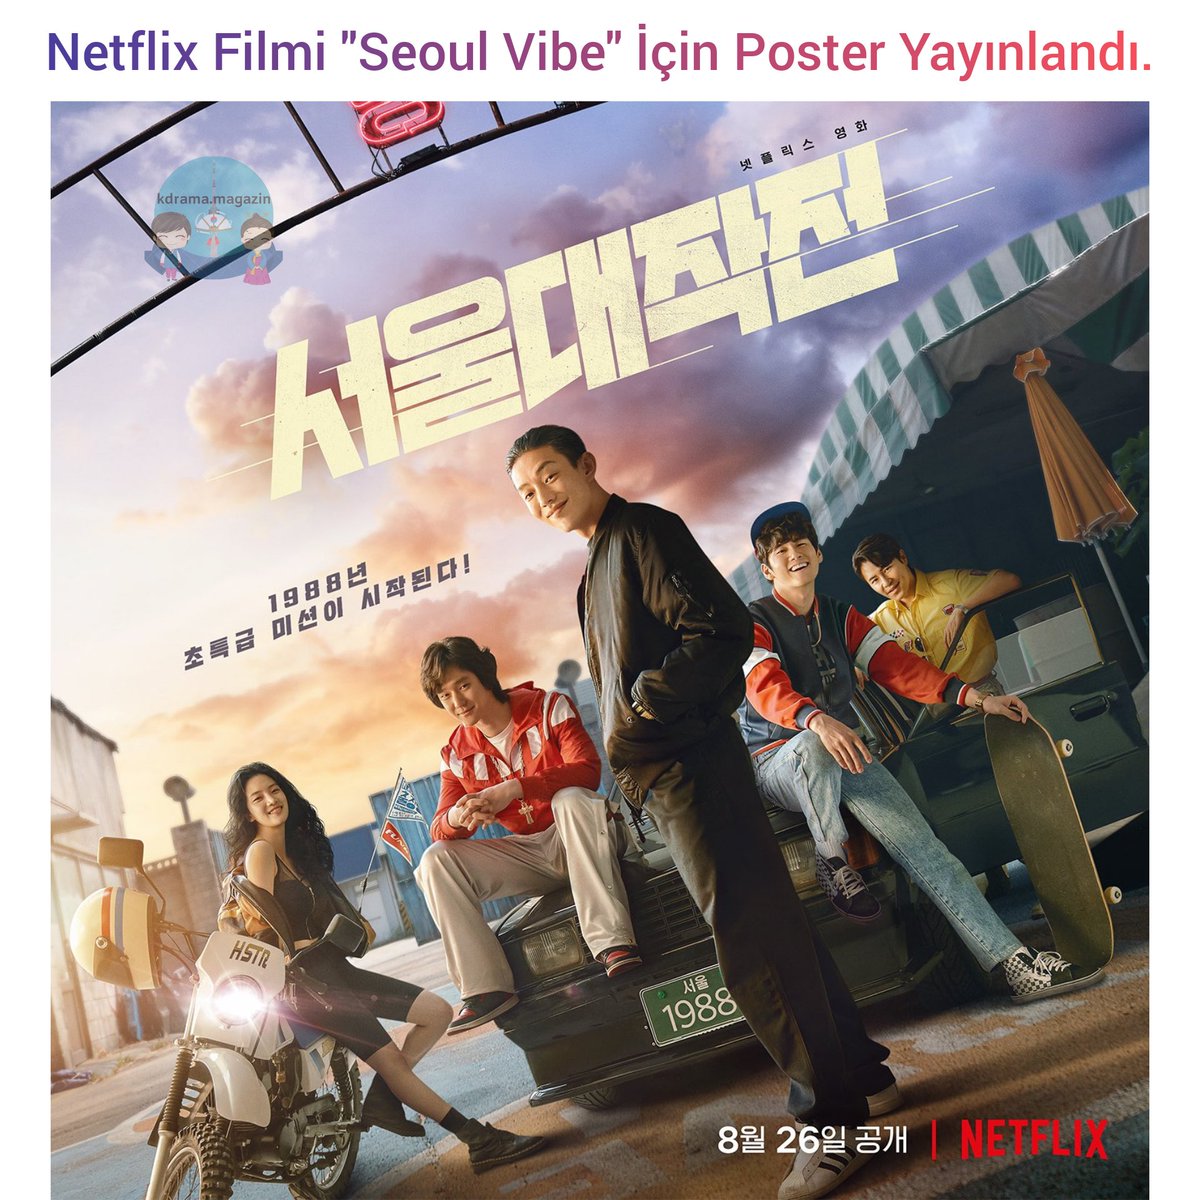 Netflix Filmi #SeoulVibe İçin Poster Yayınlandı. 

🗓26 Ağustos'ta yayınlanacak. 

#YooAhIn #GoKyungPyo #LeeKyuHyung #ParkJuHyun #OngSeongWu #KimSungKyun #JungWoongin #MoonSori #SongMino